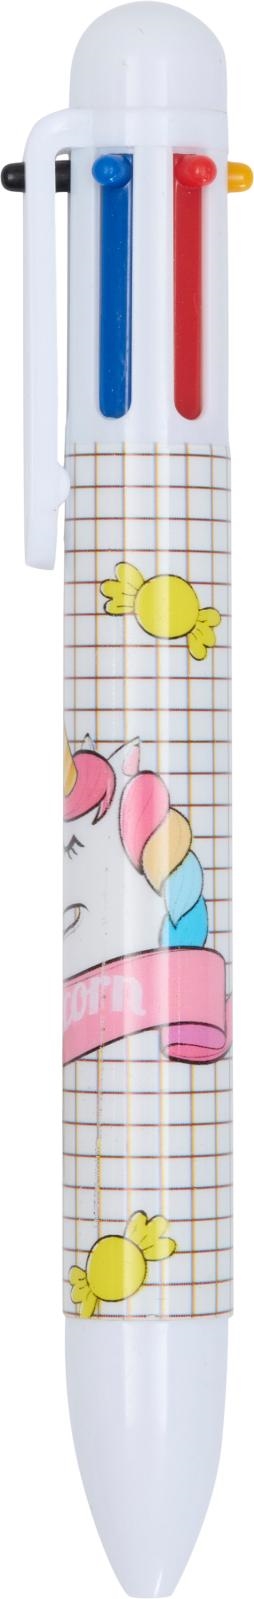 Equipage Unicorn Multiple kuglepen med 6 forskellige farver